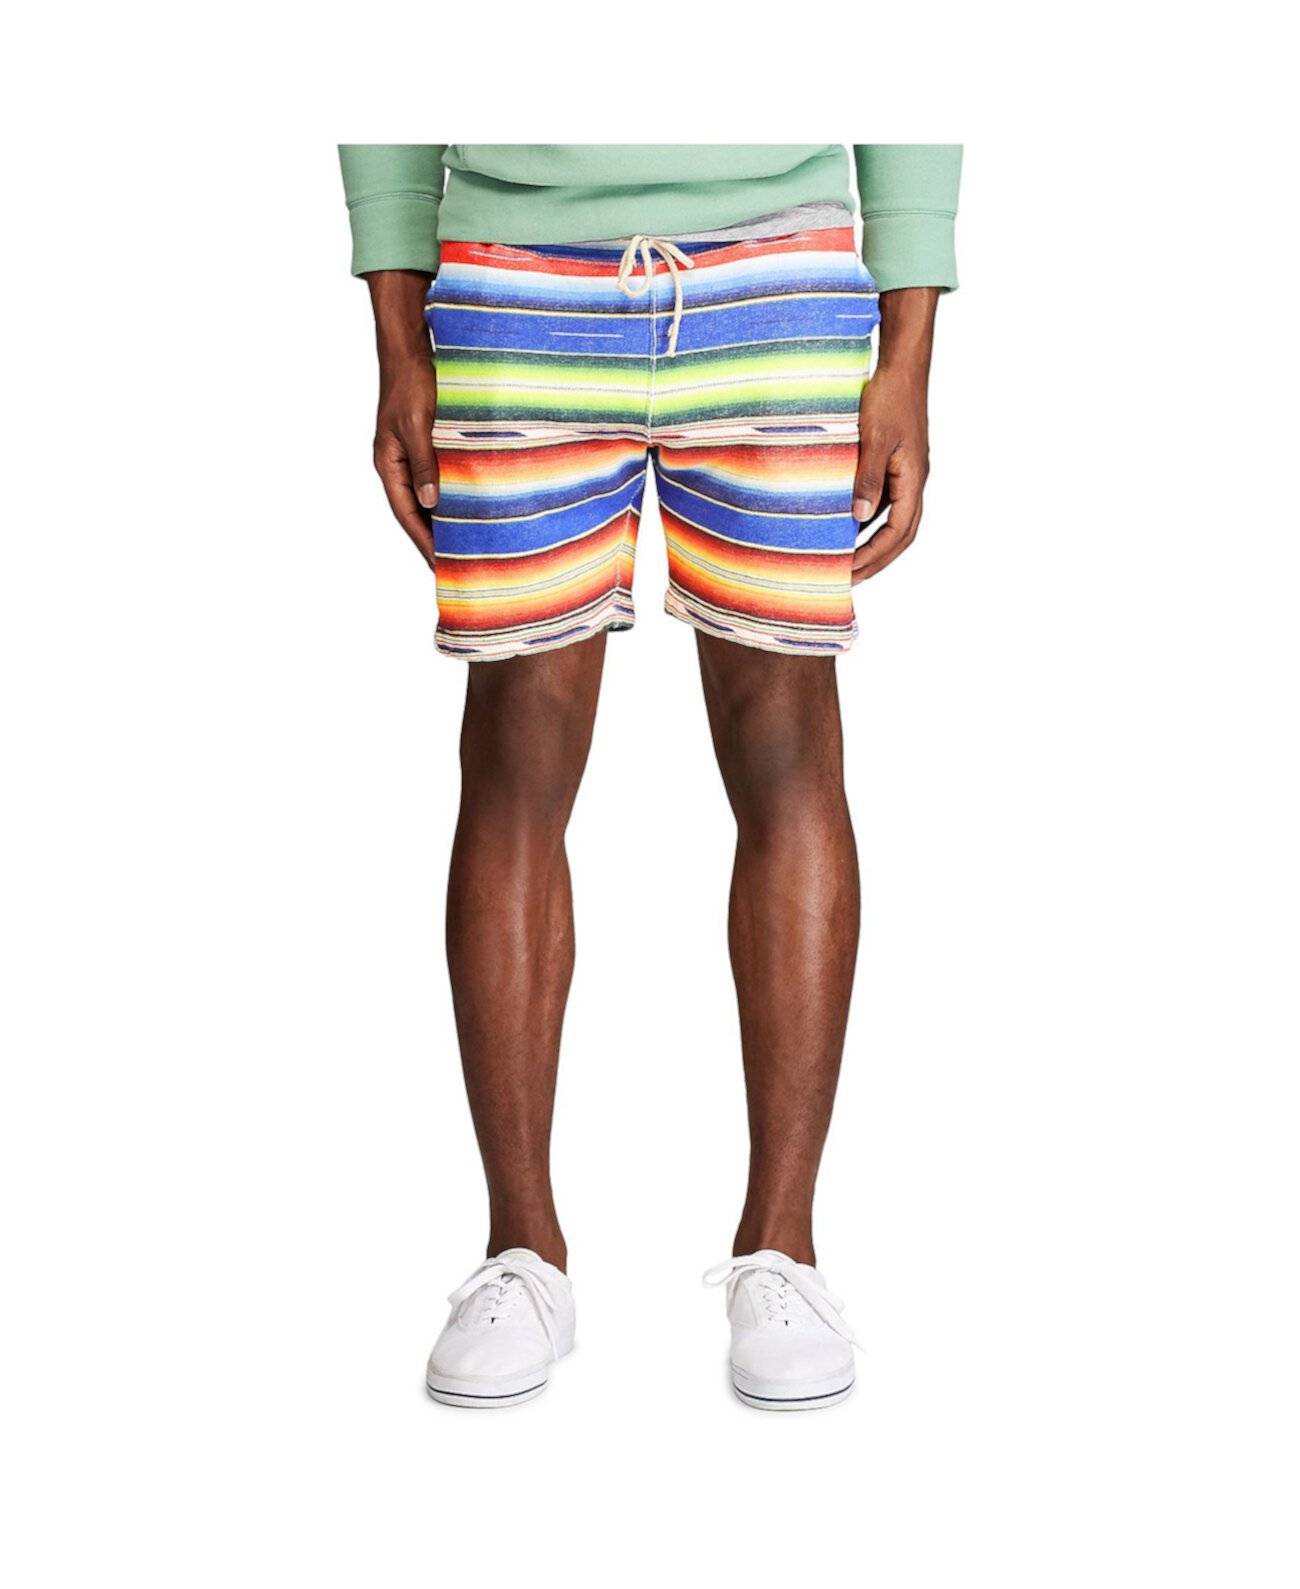 Мужские флисовые шорты с принтом Serape Ralph Lauren